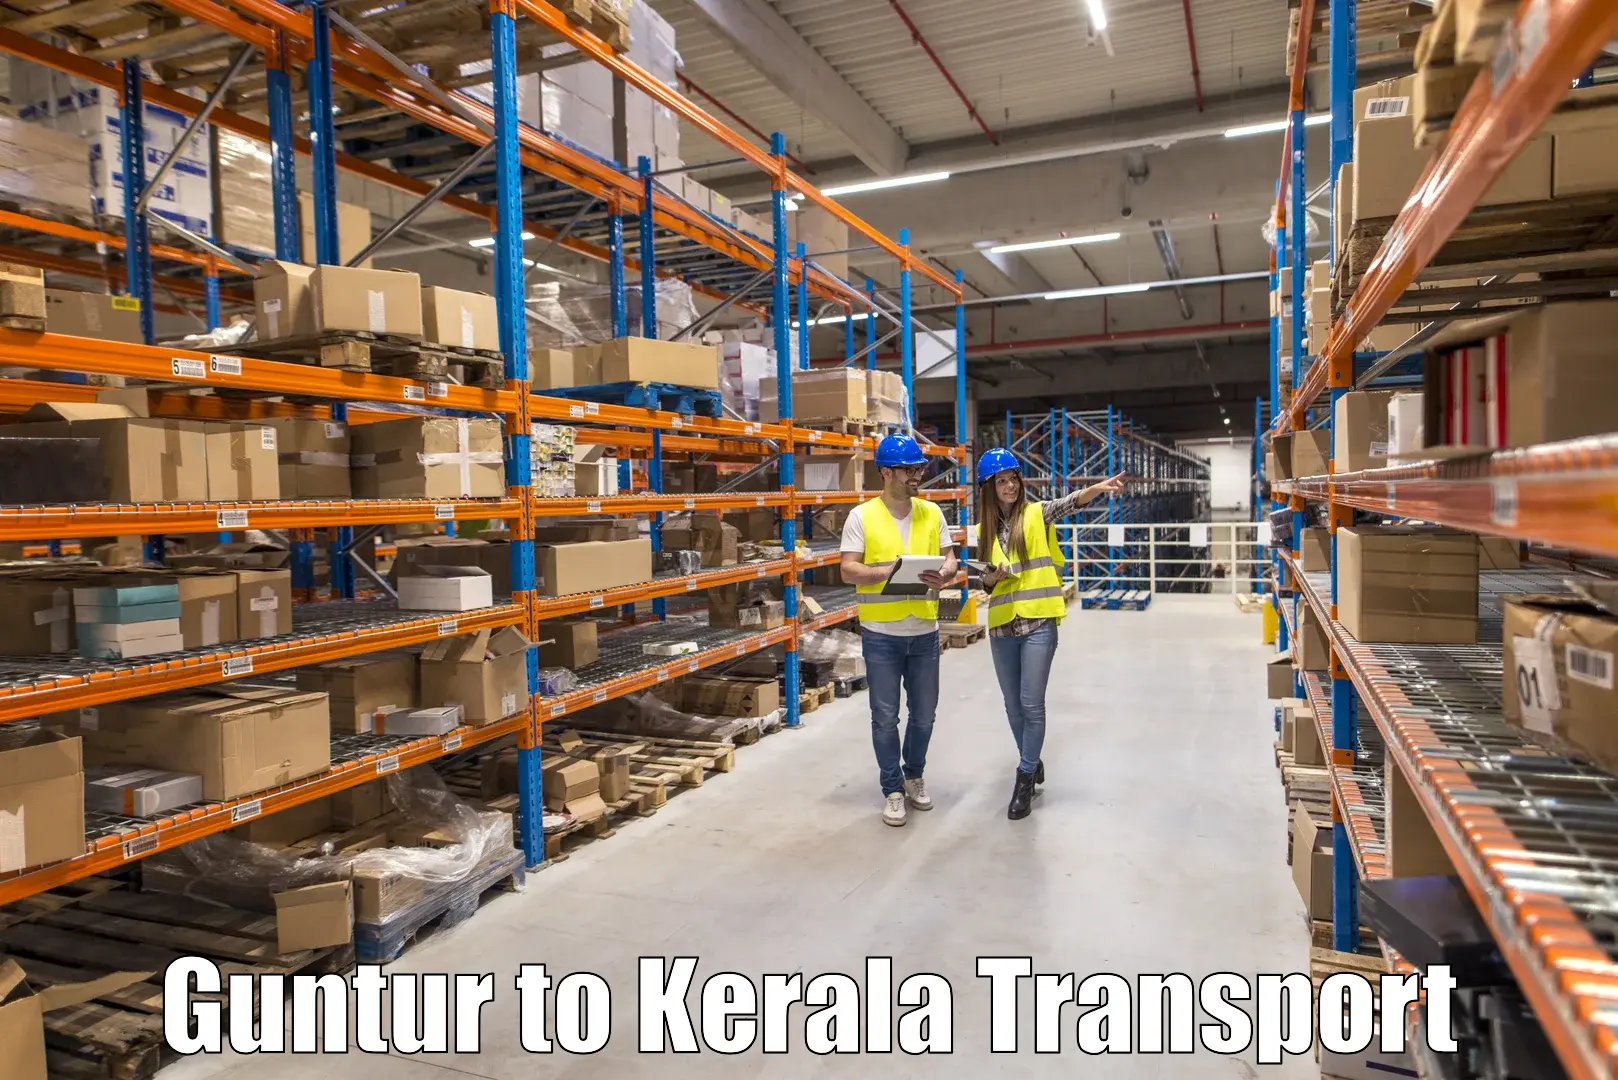 Container transportation services in Guntur to Hosdurg